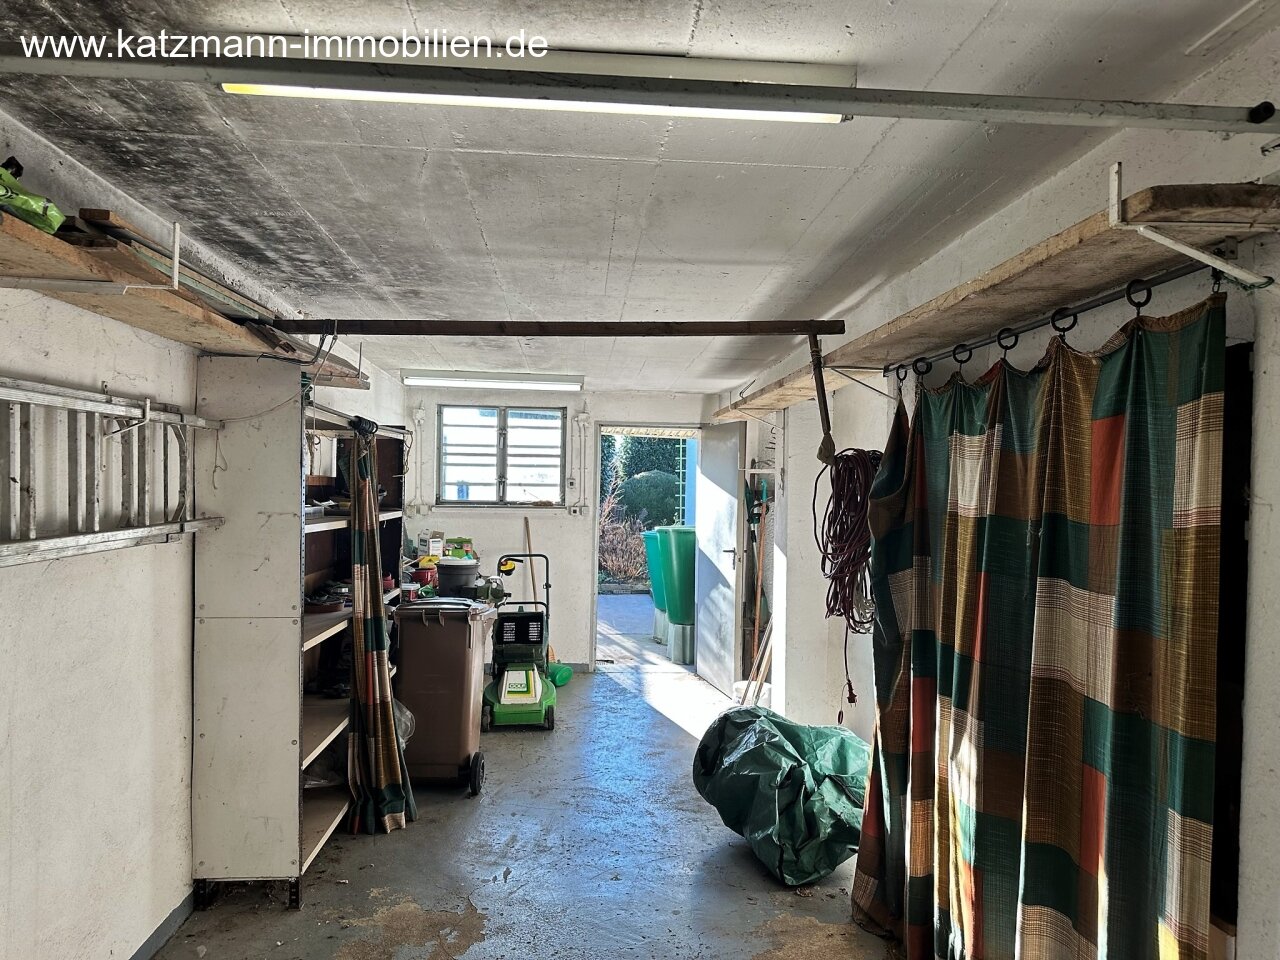  Garage (mit Platz für eine kleine Werkstatt)